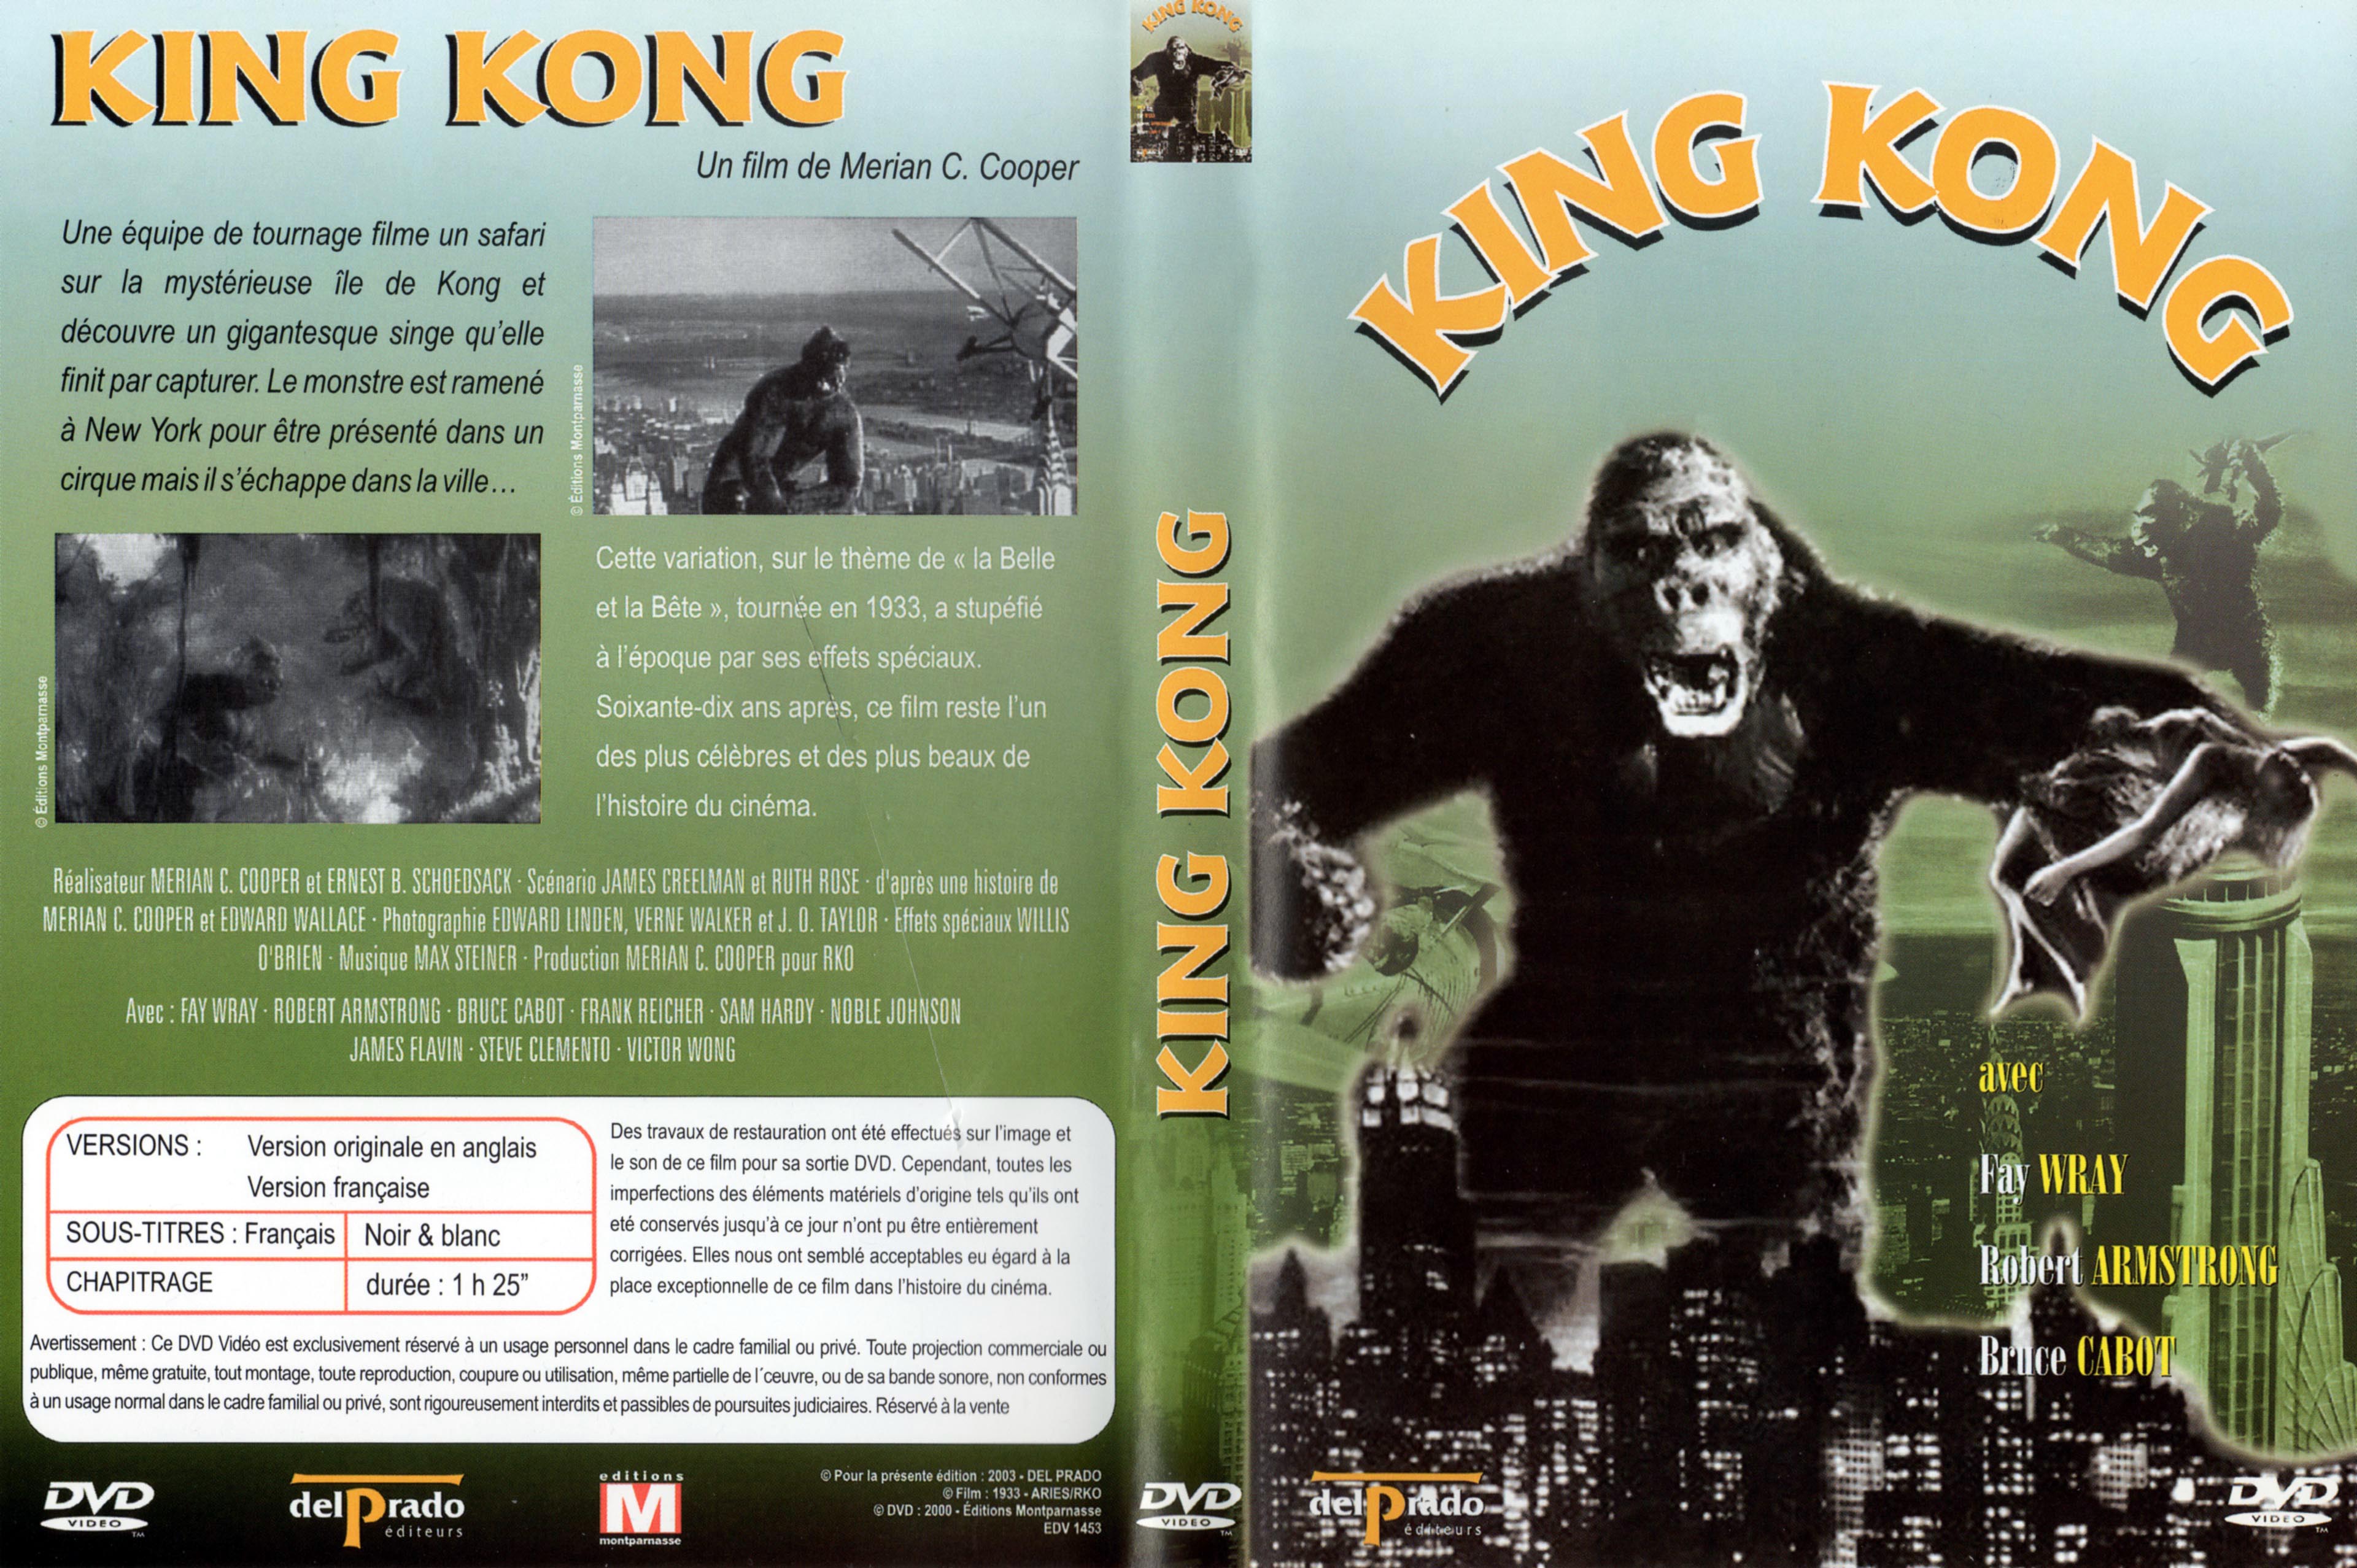 Jaquette DVD King kong (1933) v2